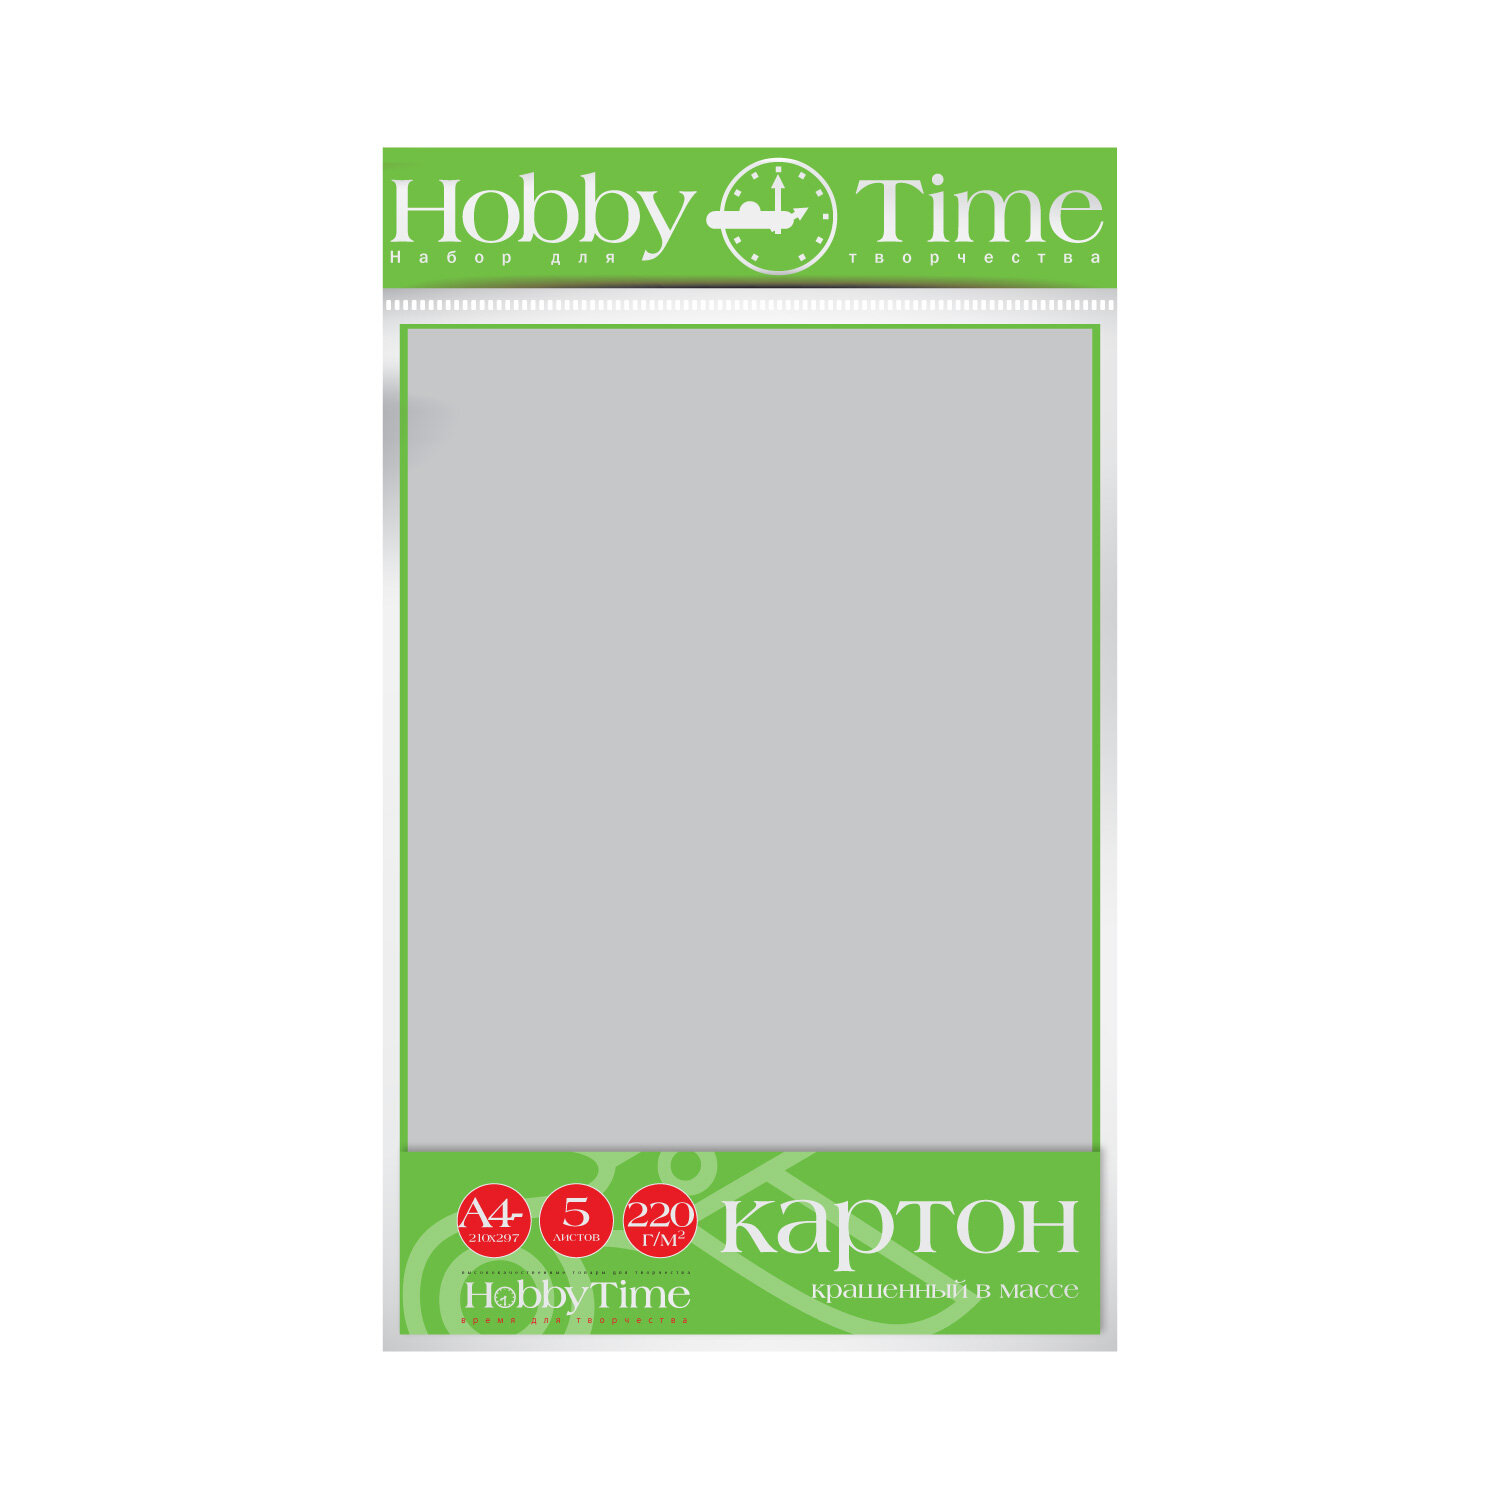 Набор цветного картона HOBBY TIME, А4 (222 х 352 мм), 5 листов, крашенный в массе, серый, Арт : 2-063/09